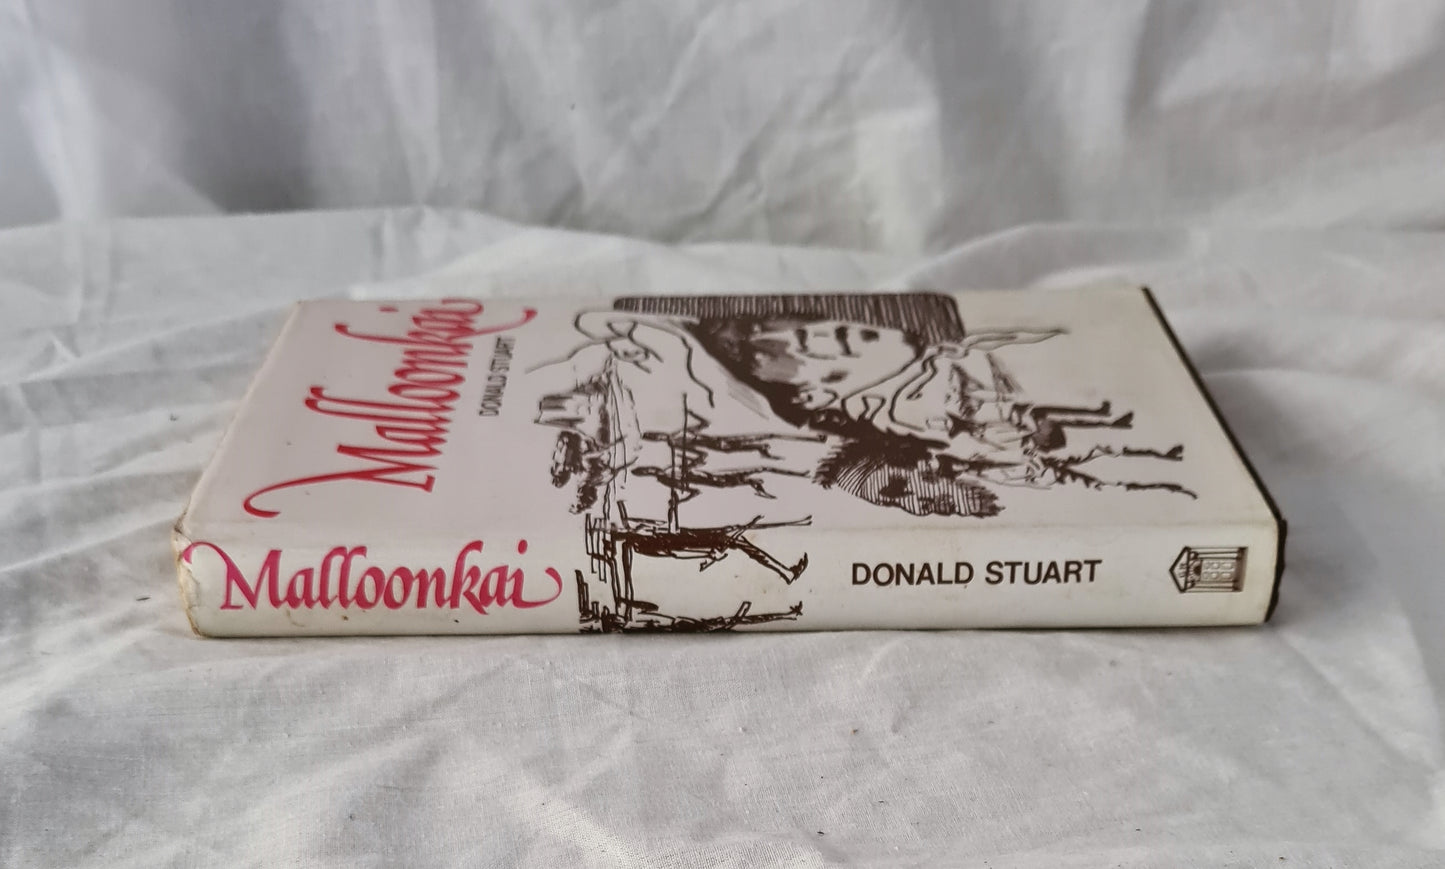 Malloonkai by Donald Stuart